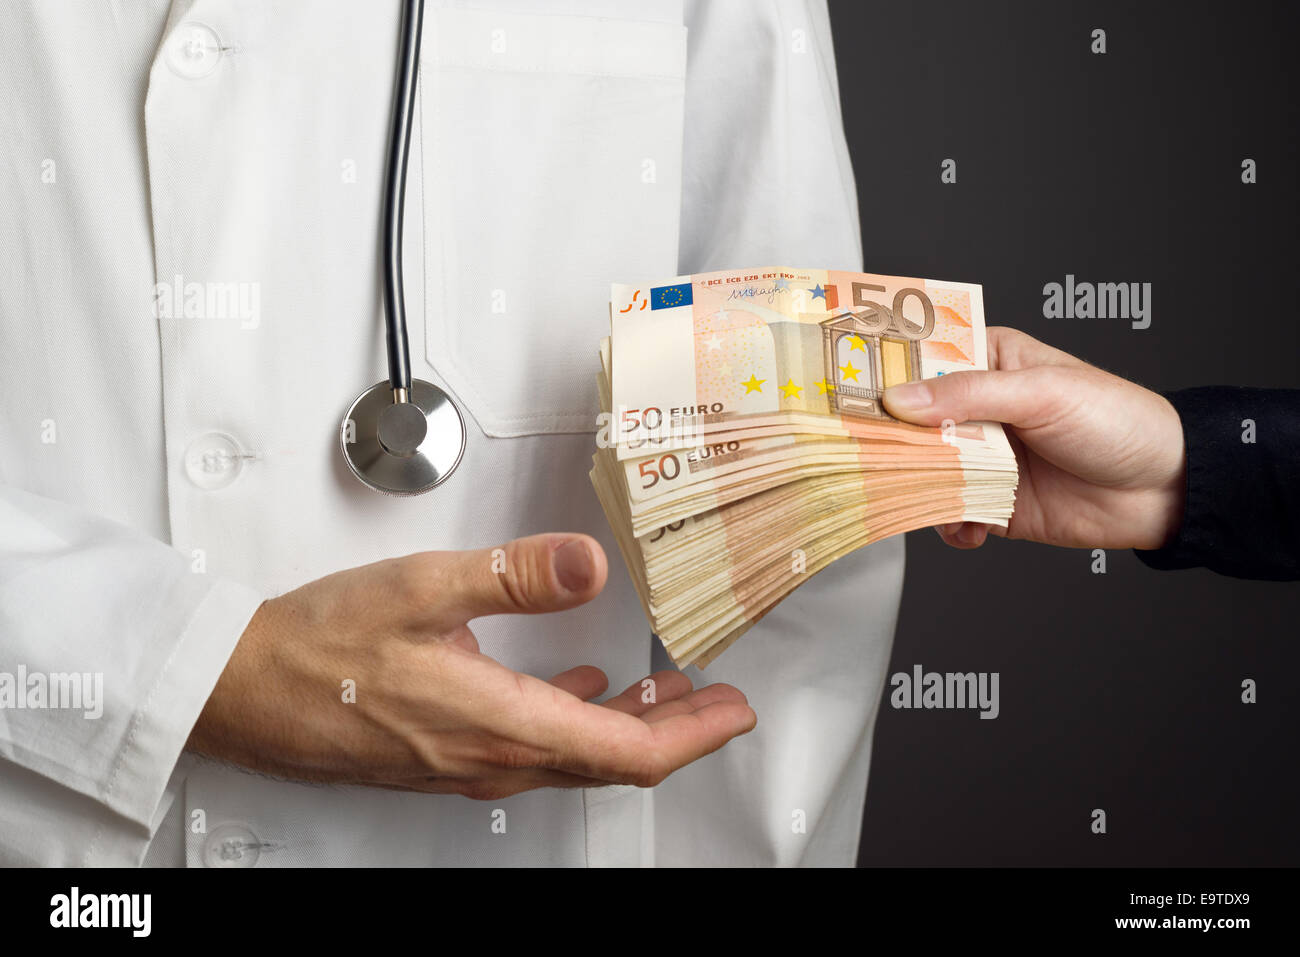 Korruption im Gesundheitswesen, Arzt empfangen große Menge an Euro-Banknoten als Bestechung. Stockfoto